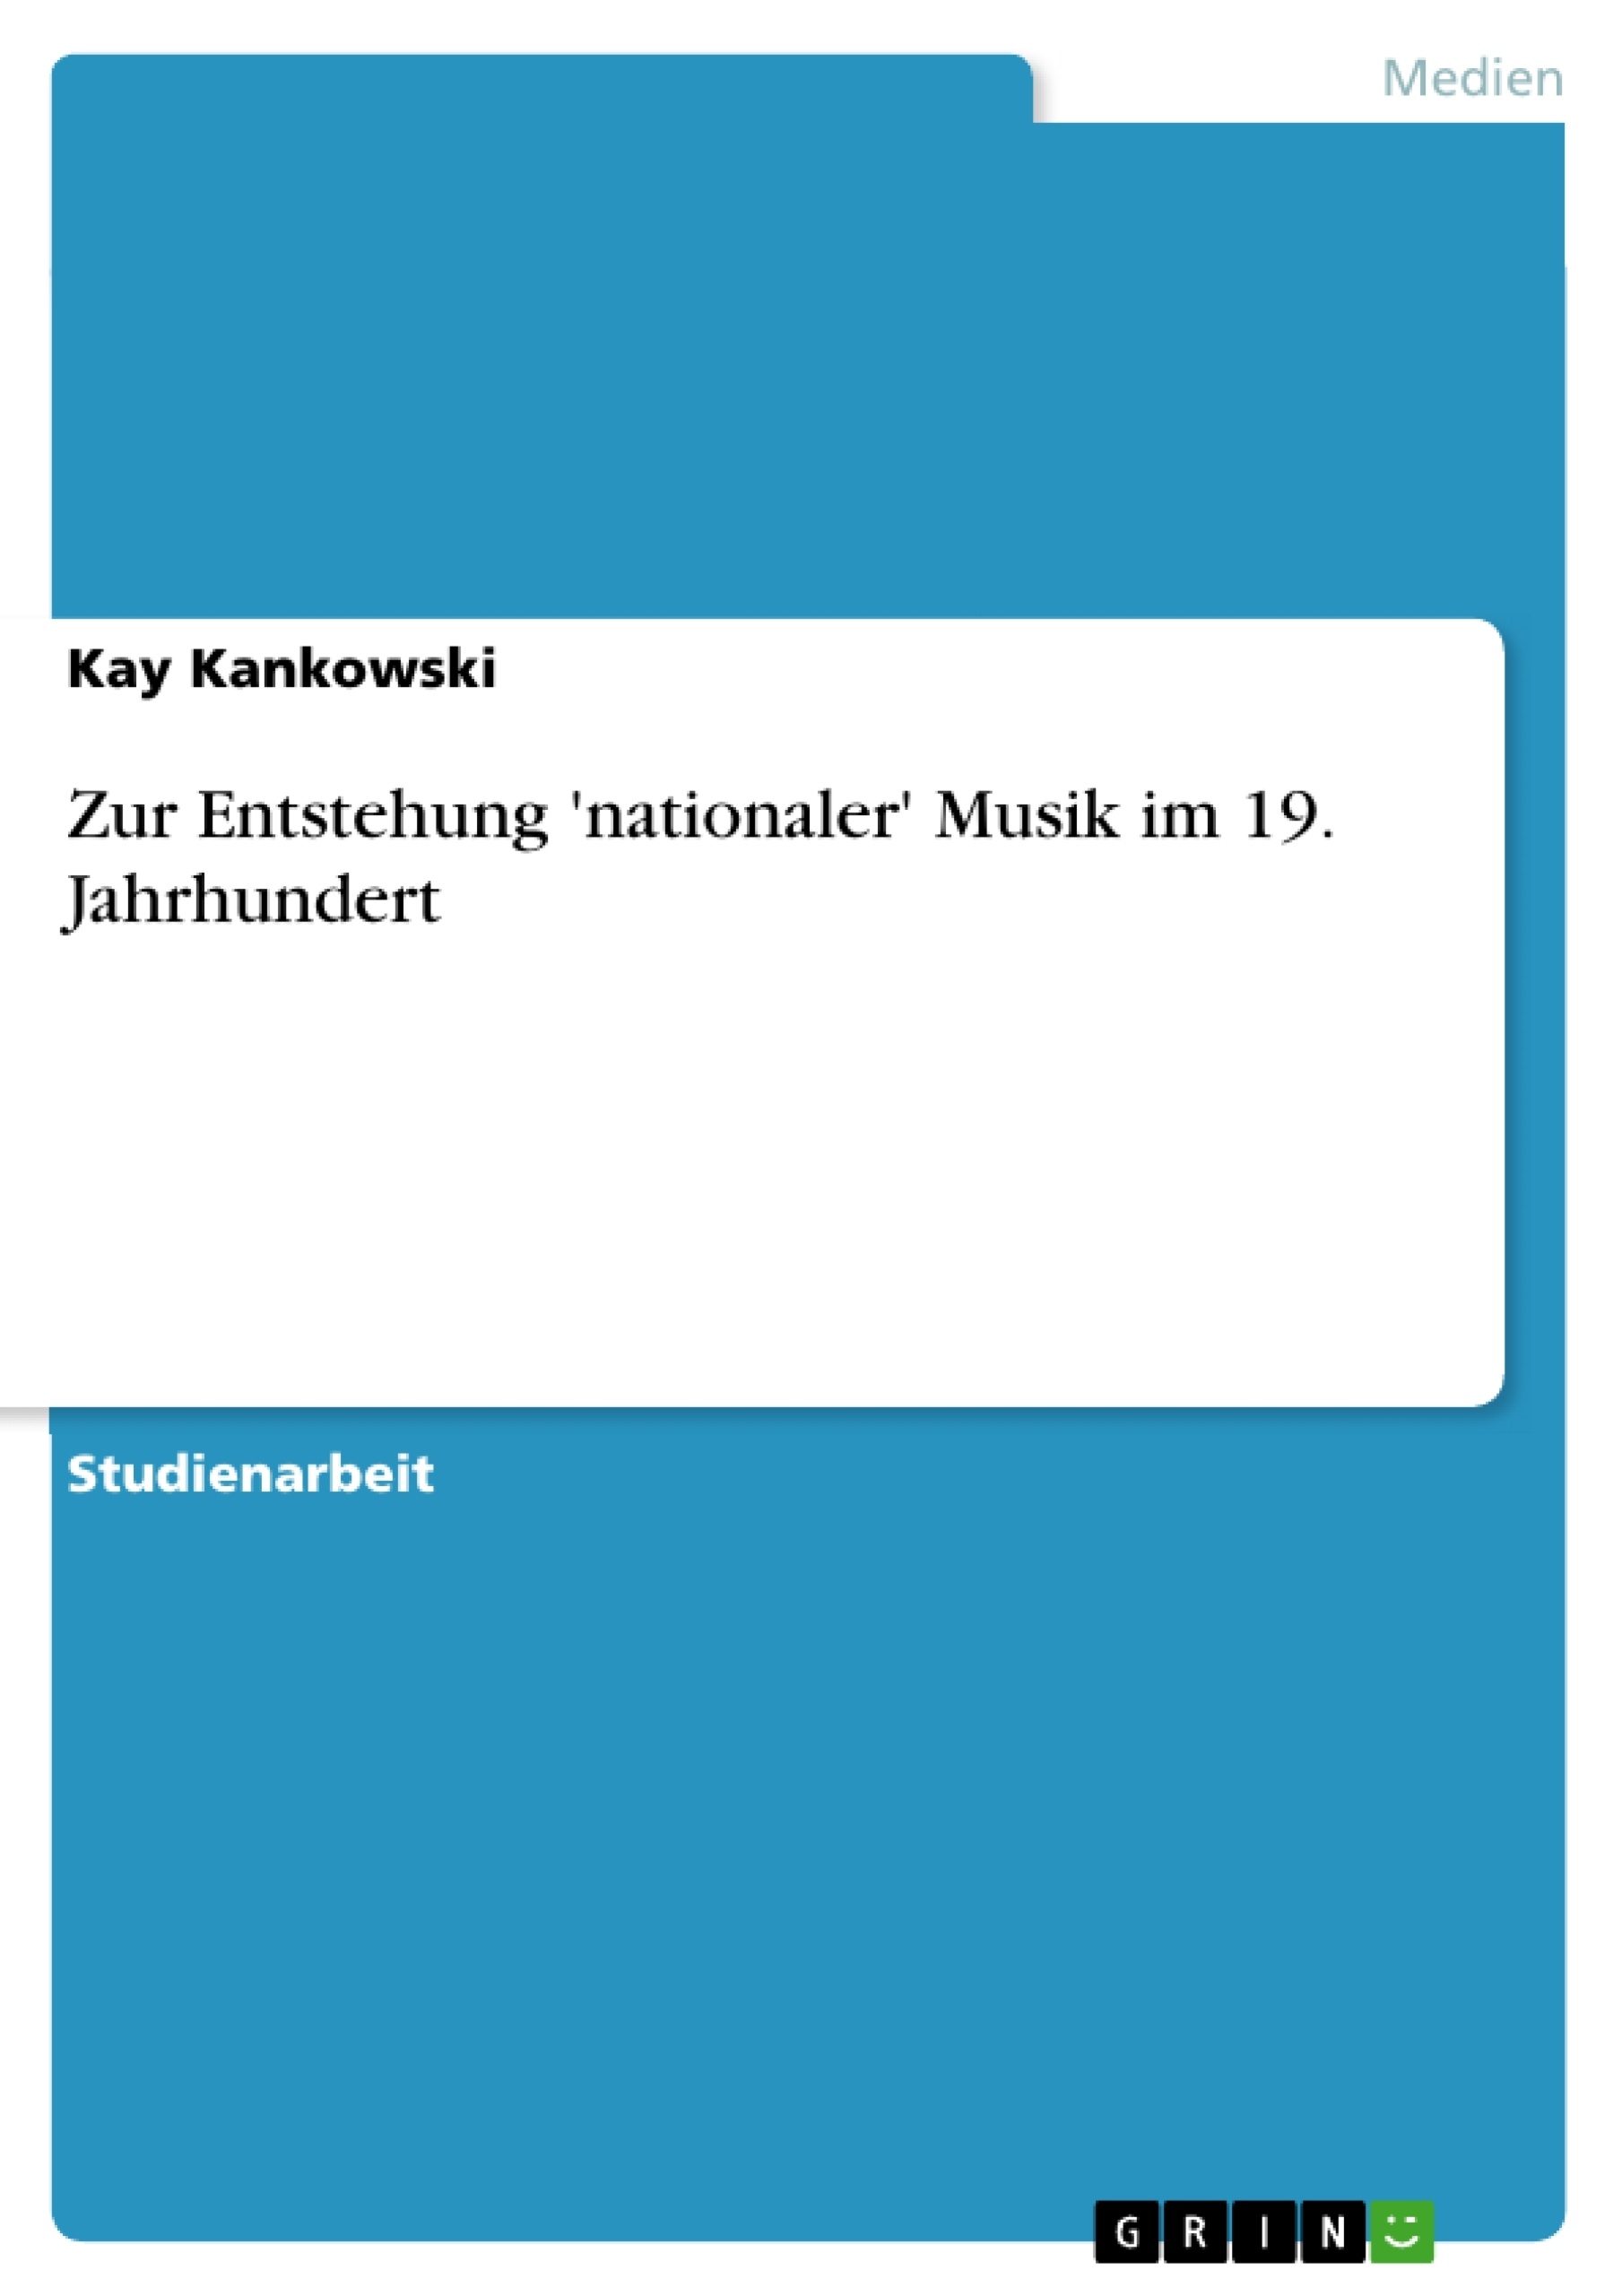 Título: Zur Entstehung 'nationaler' Musik im 19. Jahrhundert